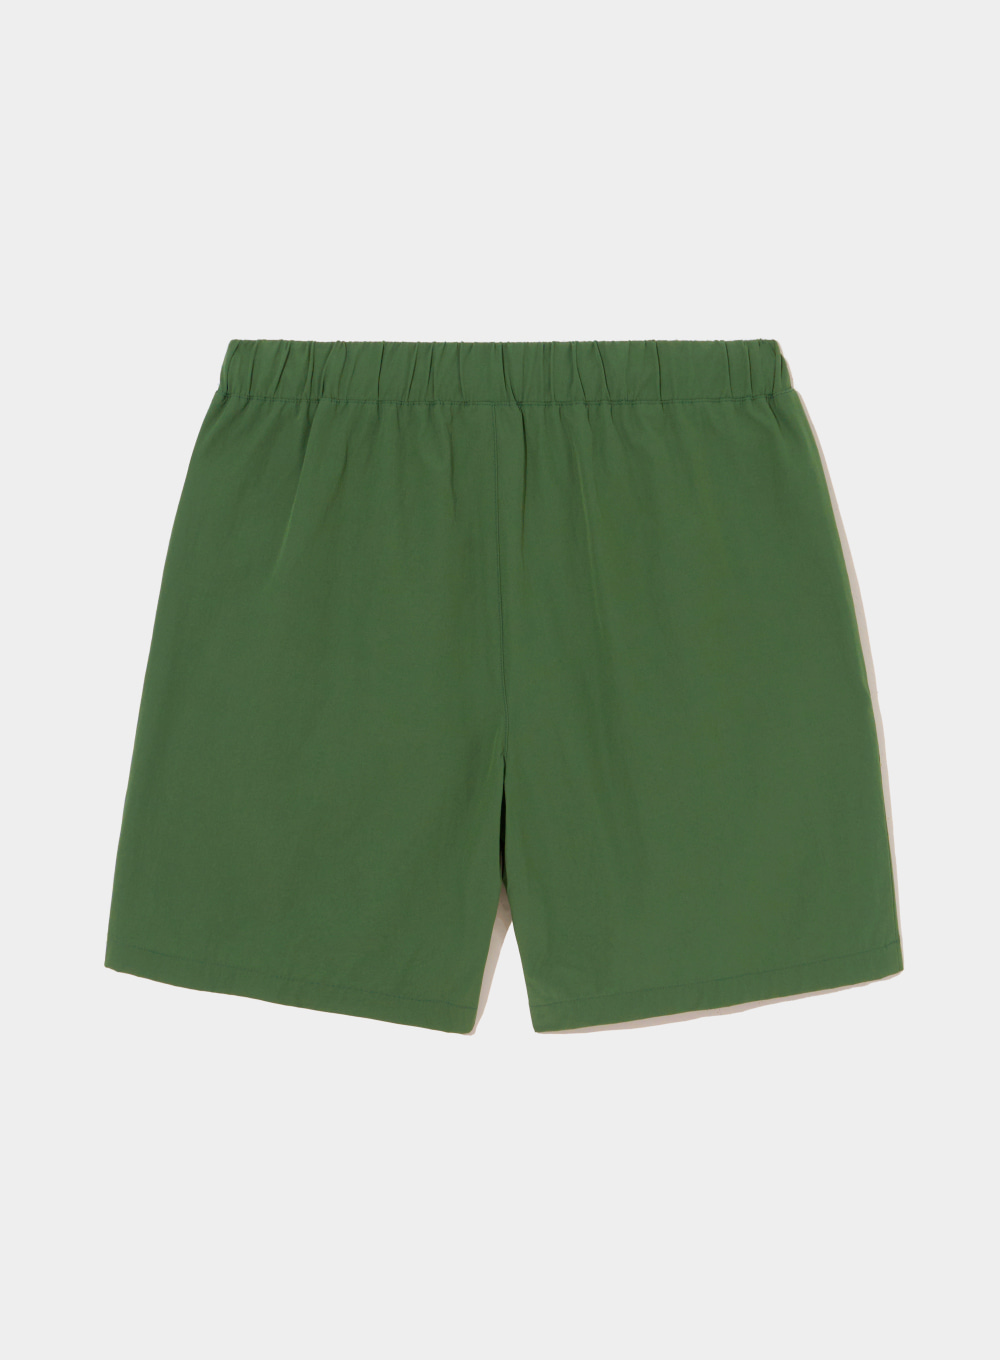 [Satur X Diadora] Taping Line Half Pants - Deep Green